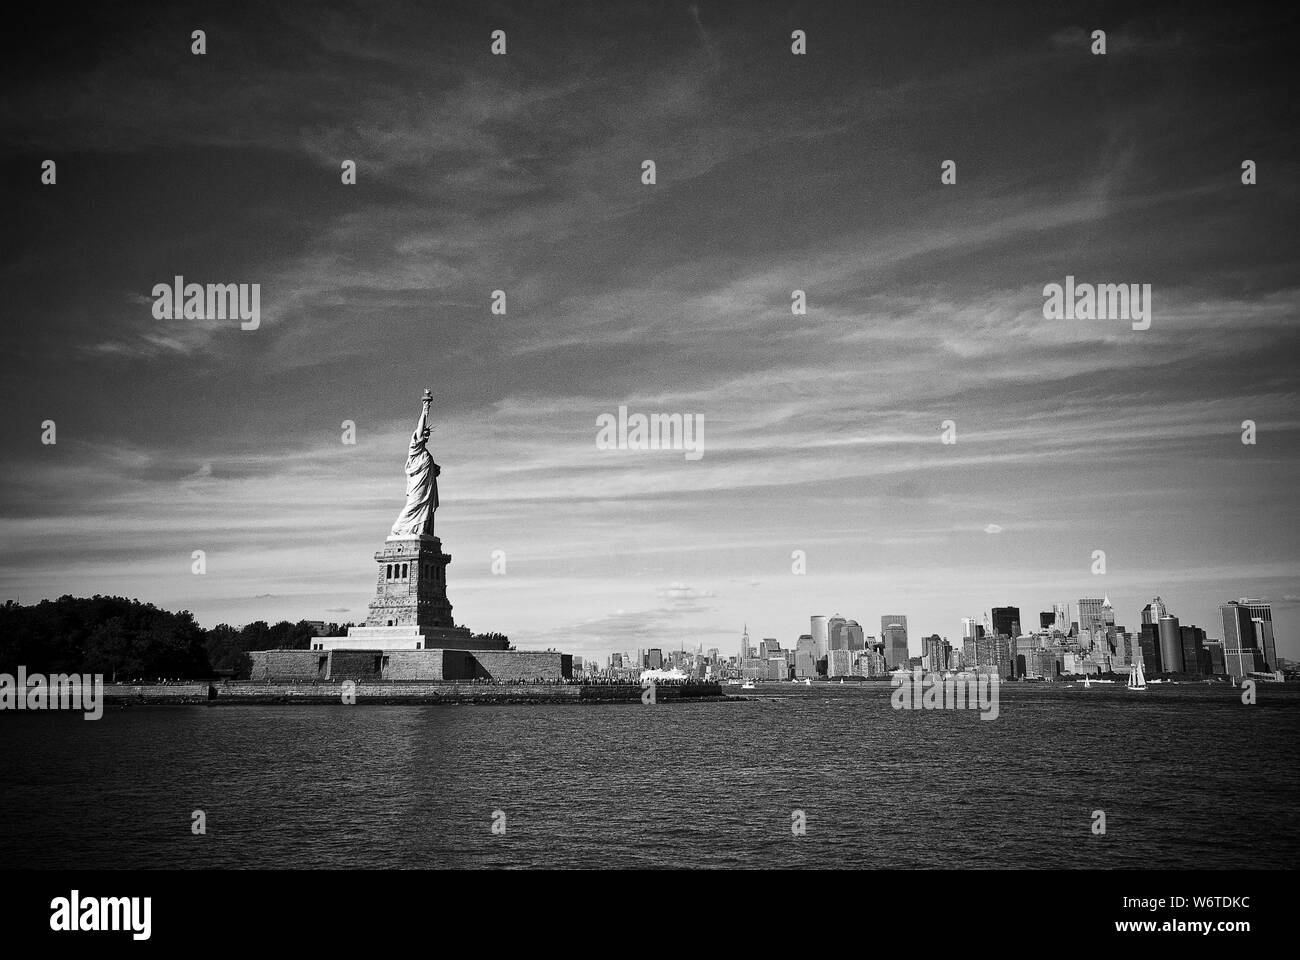 La Statue de la liberté s'élève au-dessus du port de New York avec le Lower Manhattan (New York) skyline en arrière-plan. Banque D'Images